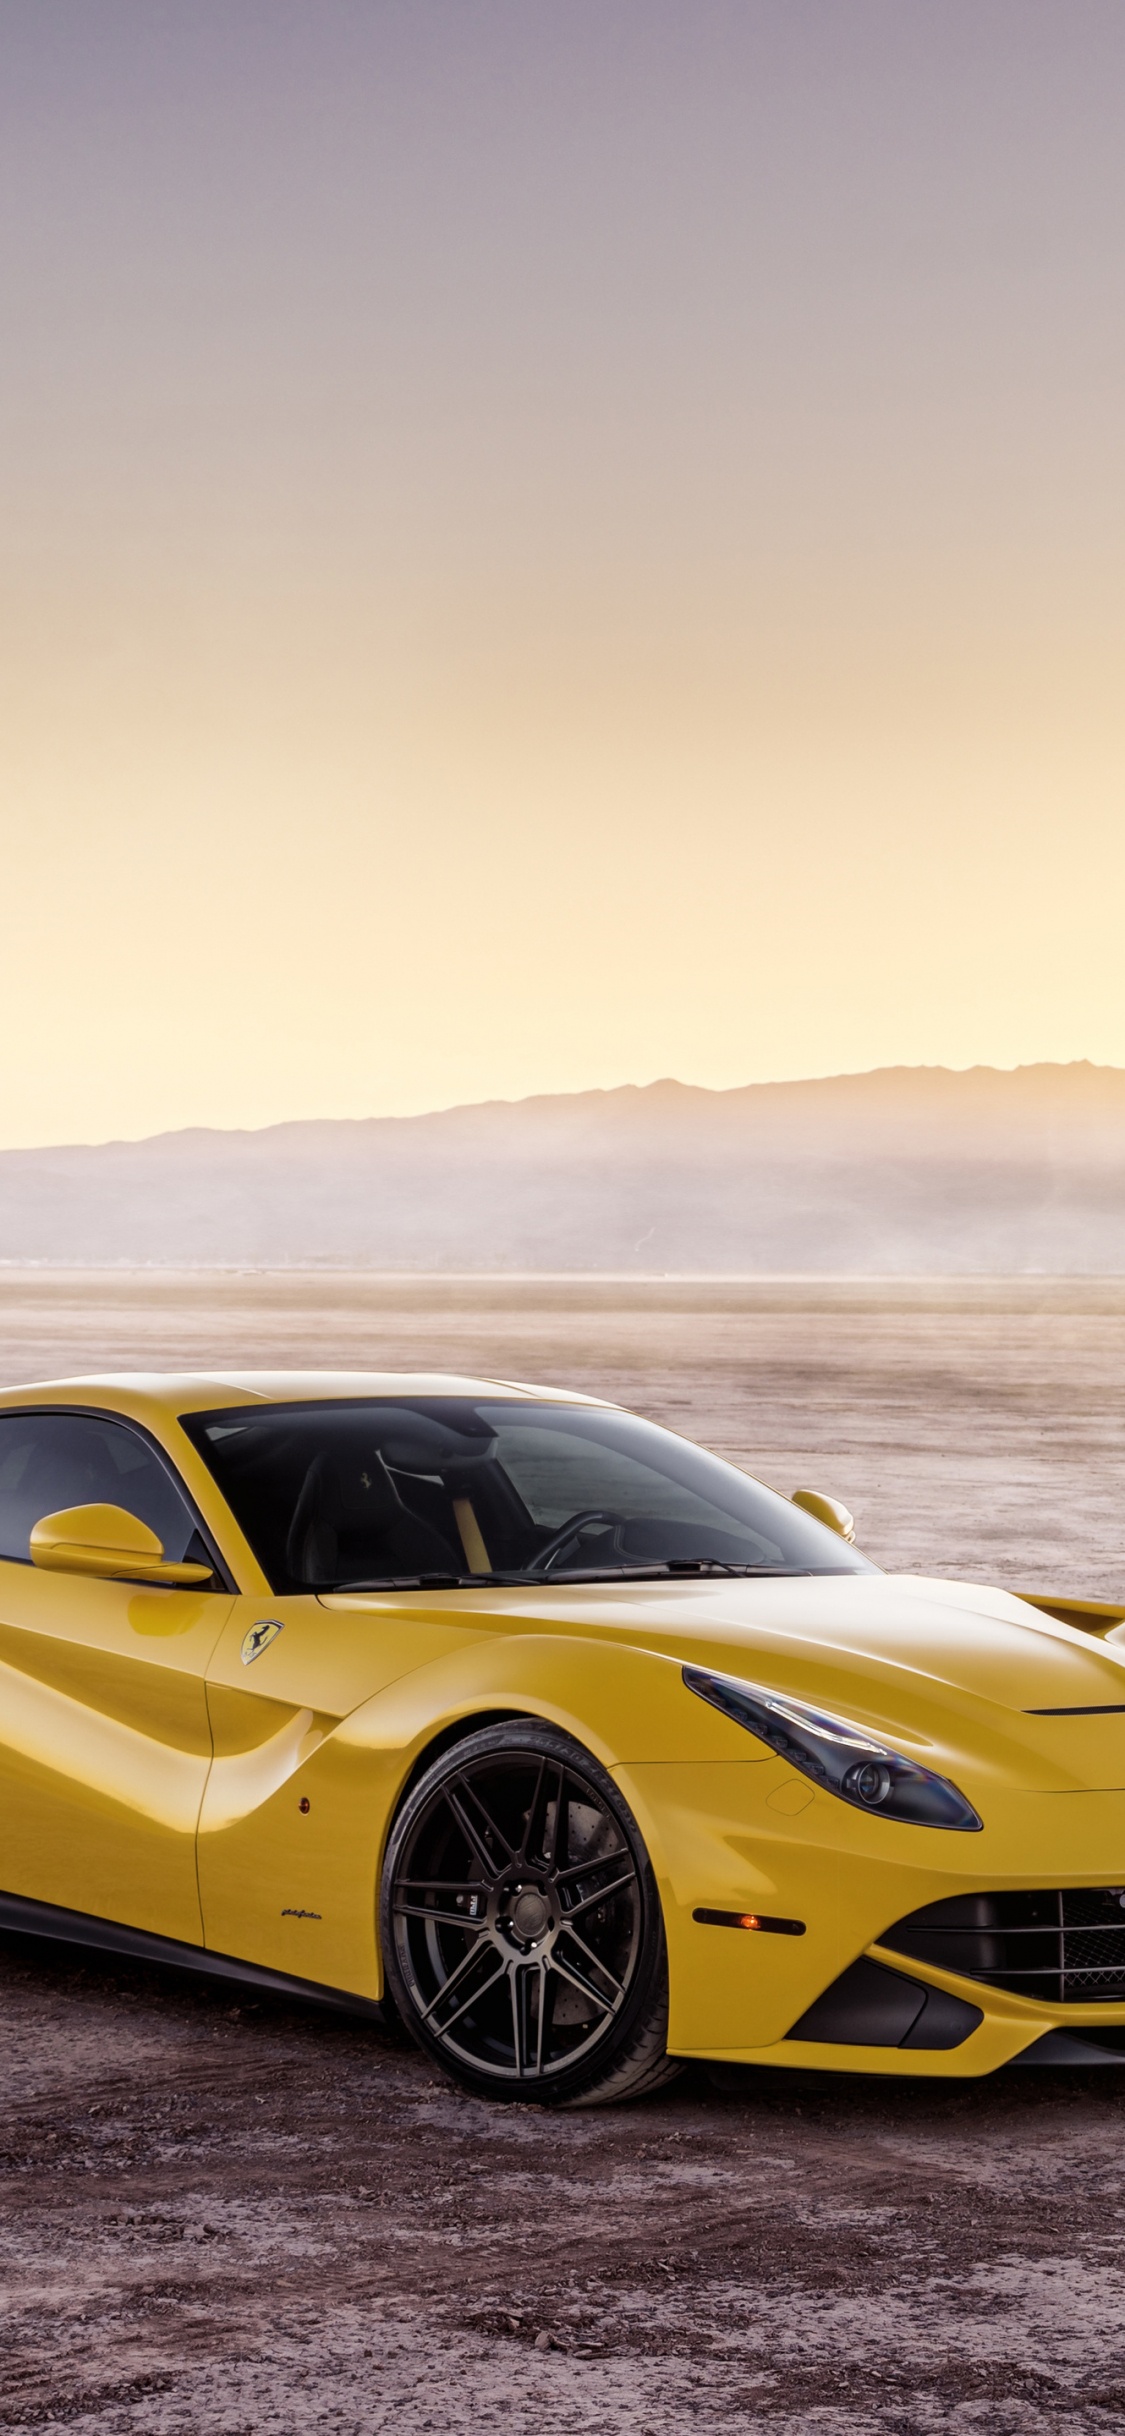 Ferrari, 超级跑车, 黄色的, 法拉利的加利福尼亚州, 法拉利fxx 壁纸 1125x2436 允许